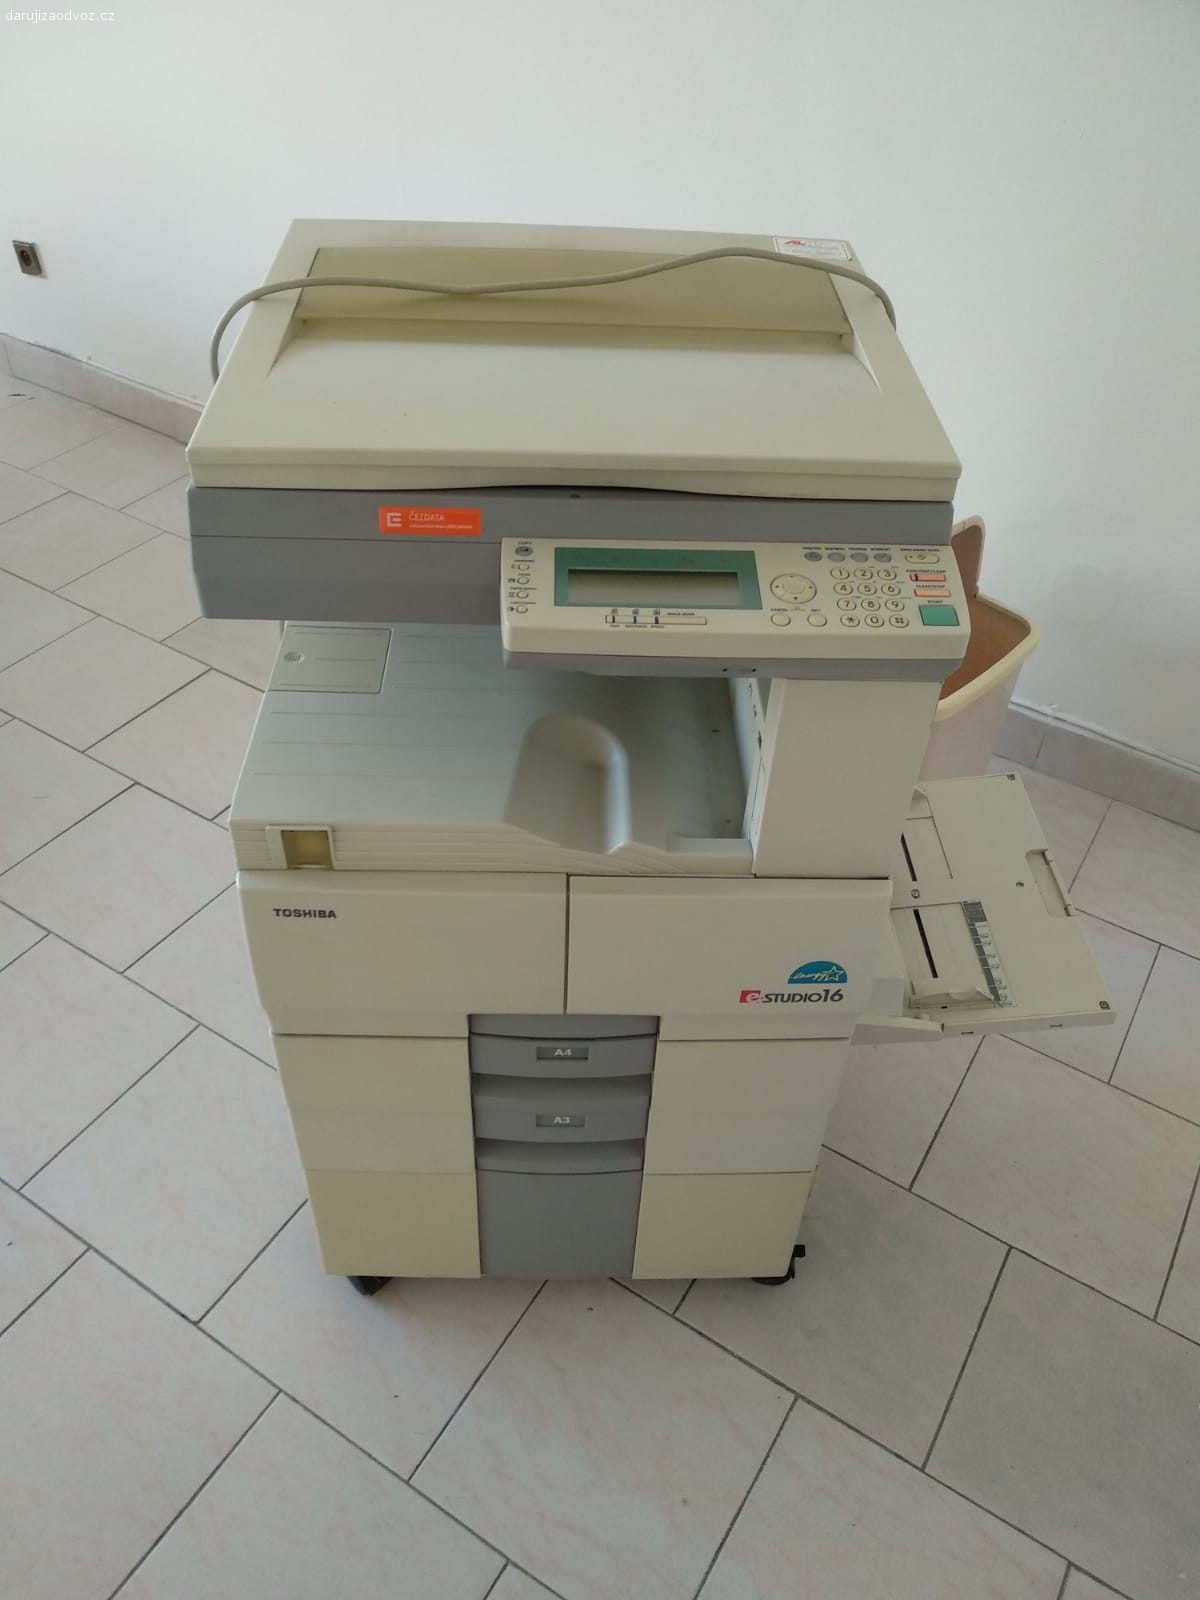 Tiskárna Toshiba DP-1600. Daruji za odvoz - tiskárna funkční dlouho nepoužívaná tisk A3.